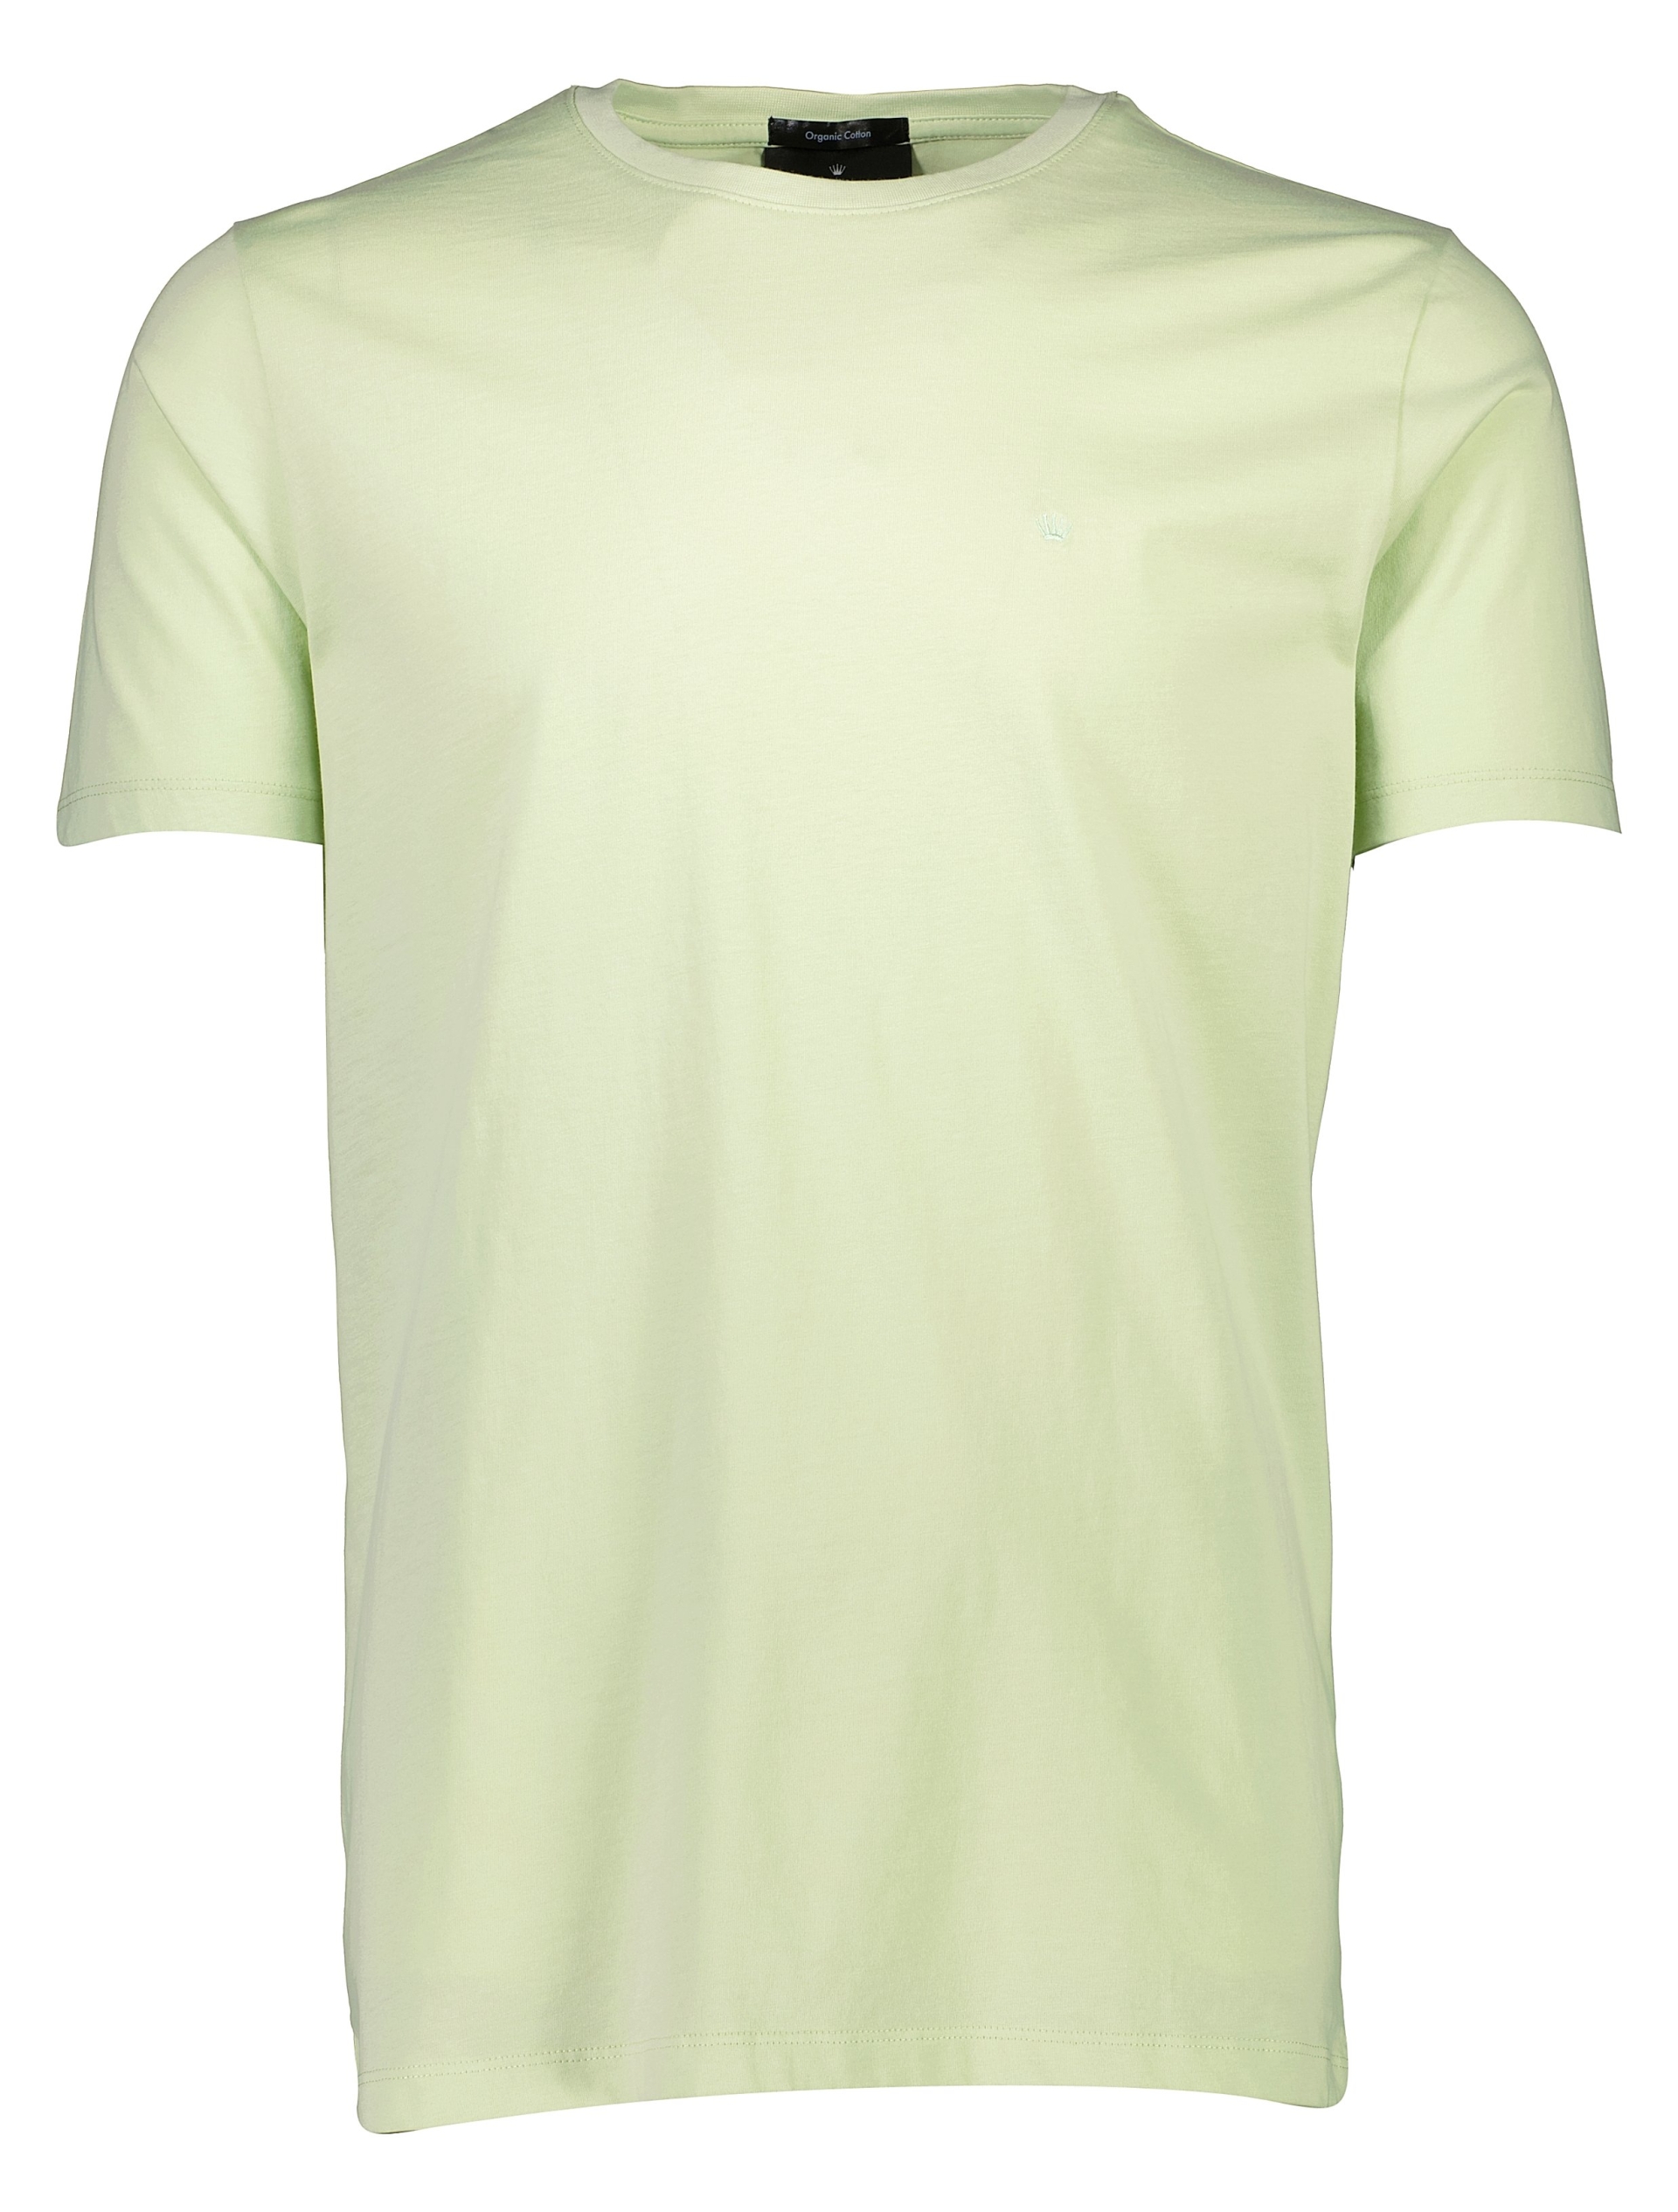 Junk de Luxe T-shirt grön / mint green